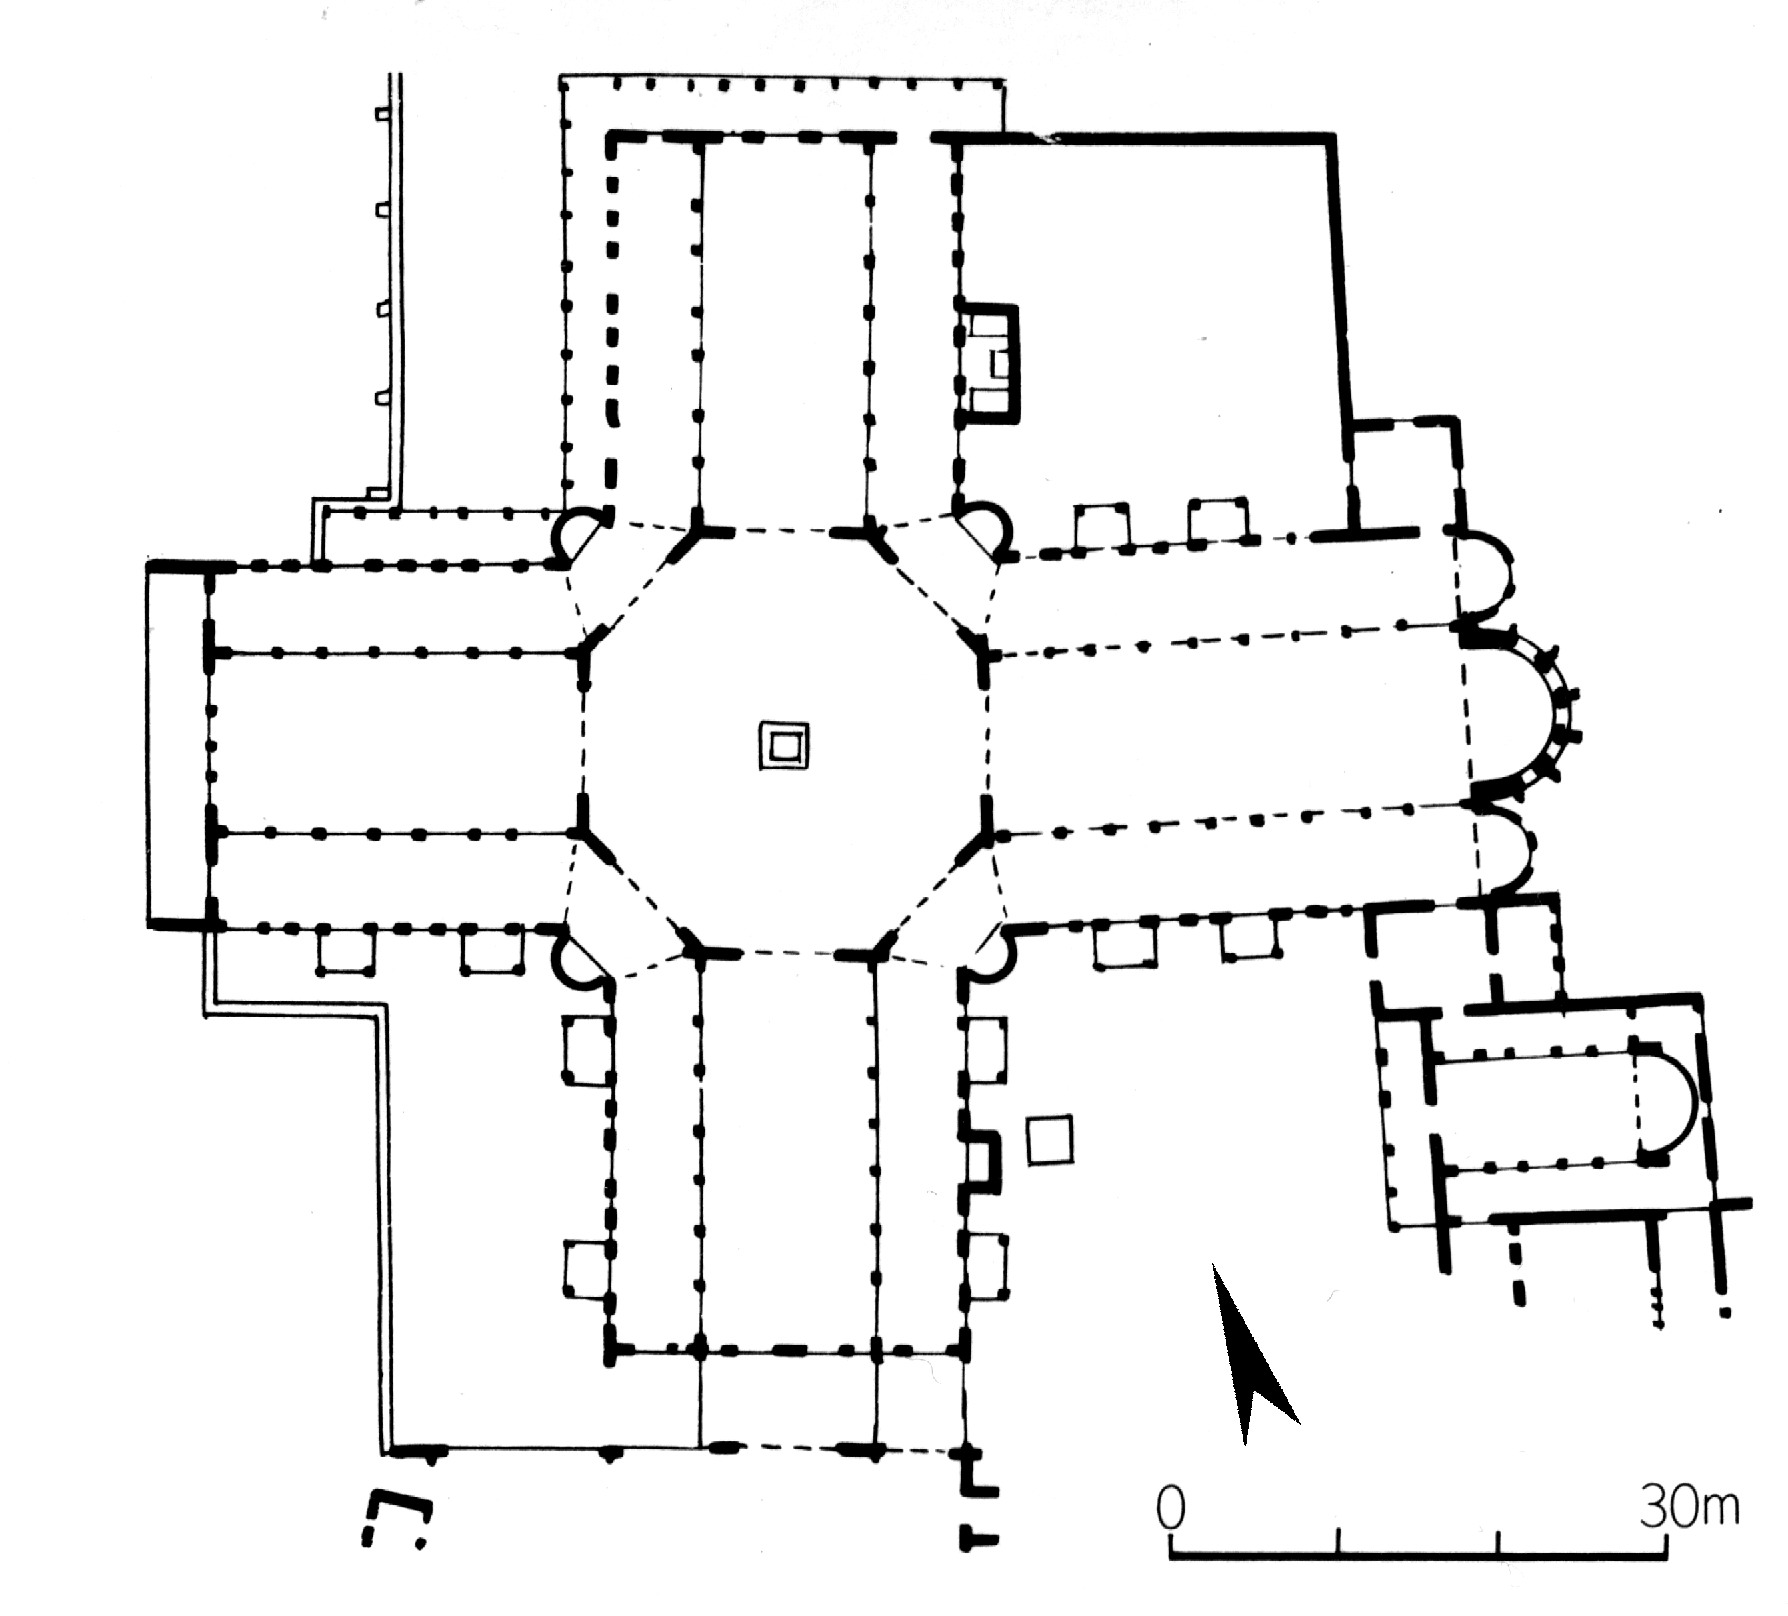 路思义教堂的设计图纸图片